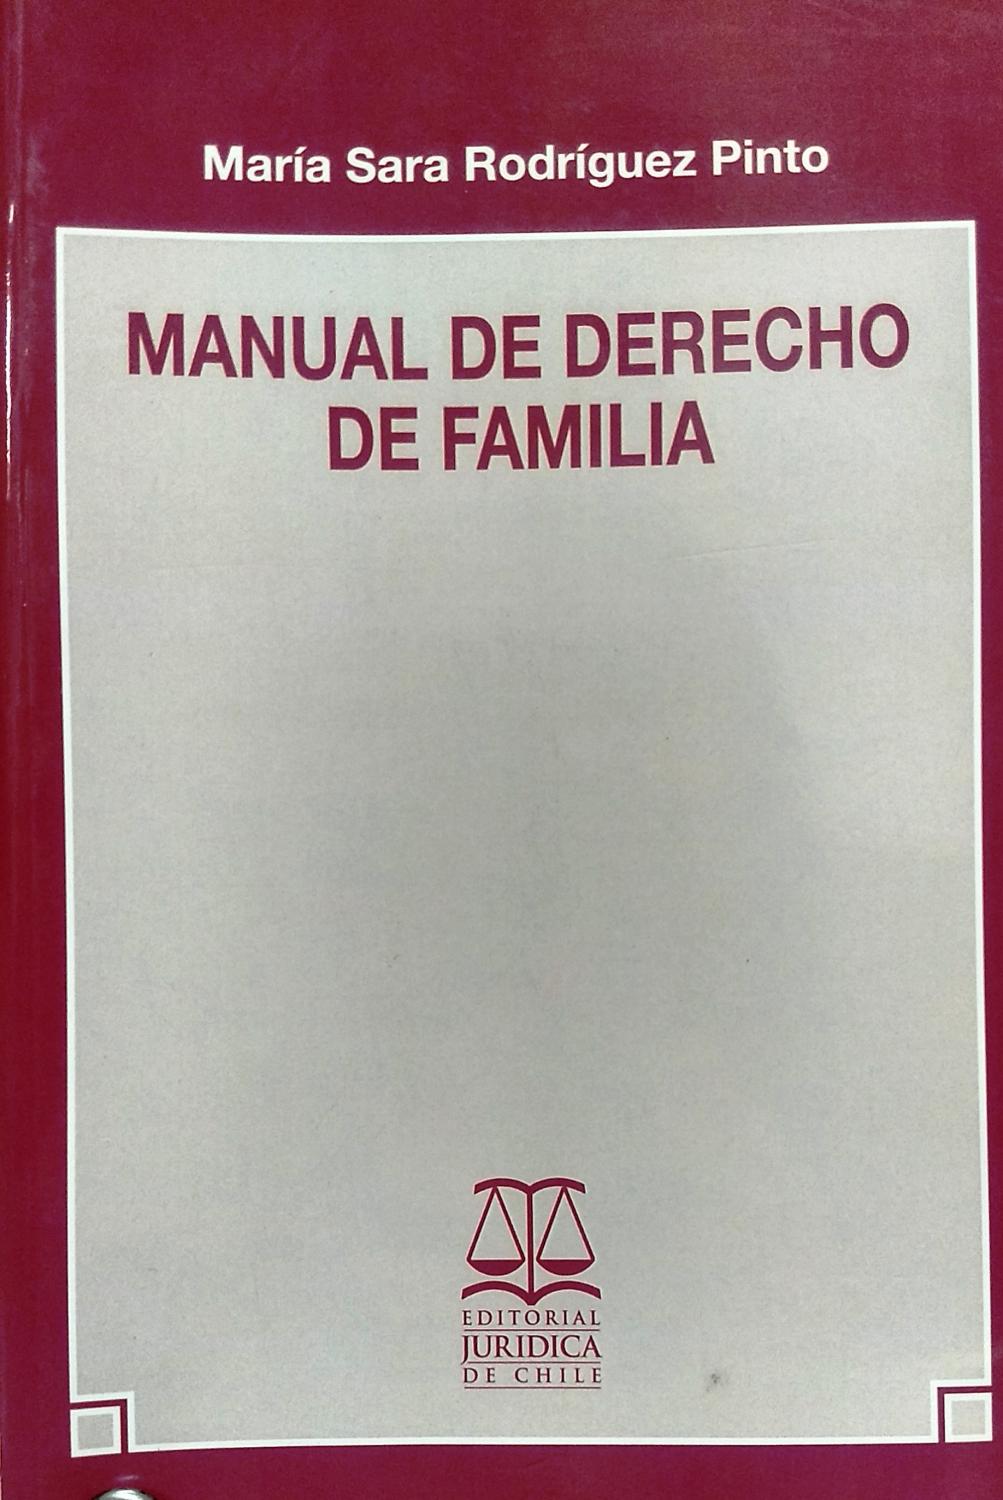 Manual De Derecho De Familia By Rodr 237 Guez Pinto Mar 237 A Sara Jur 237 Dica De Chile Santiago De